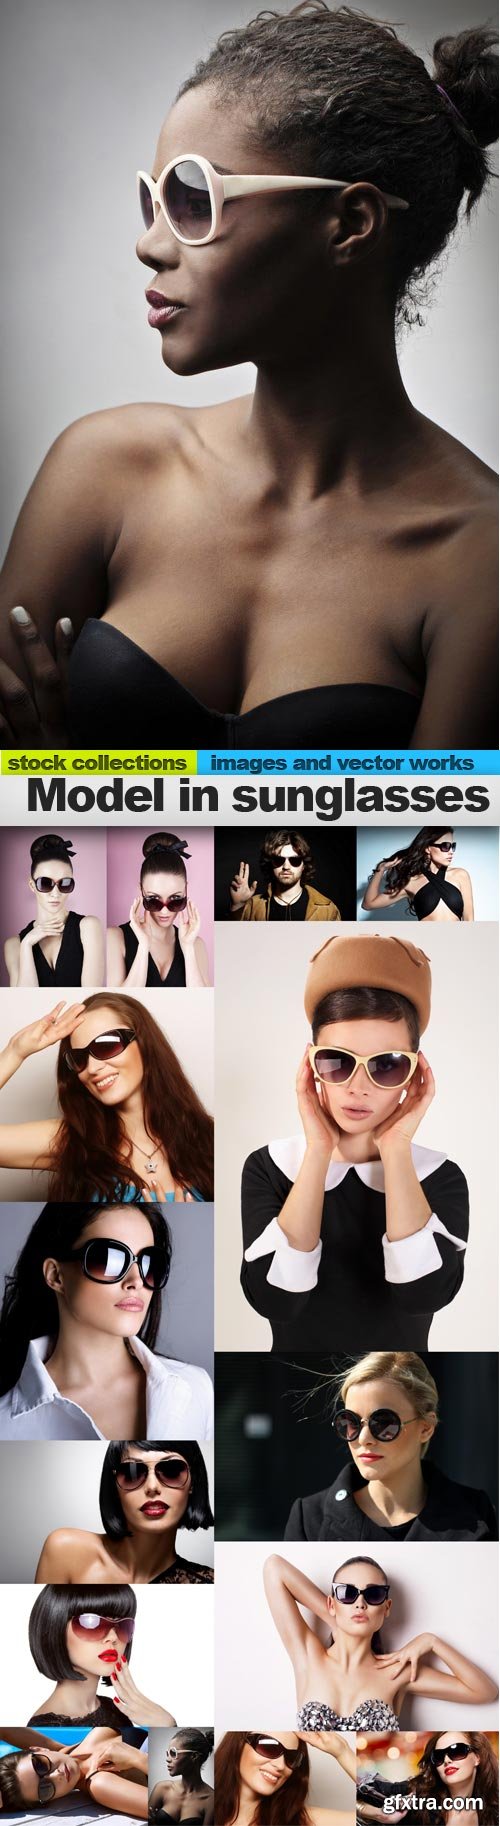 Model in sunglasses, 15 x UHQ JPEG